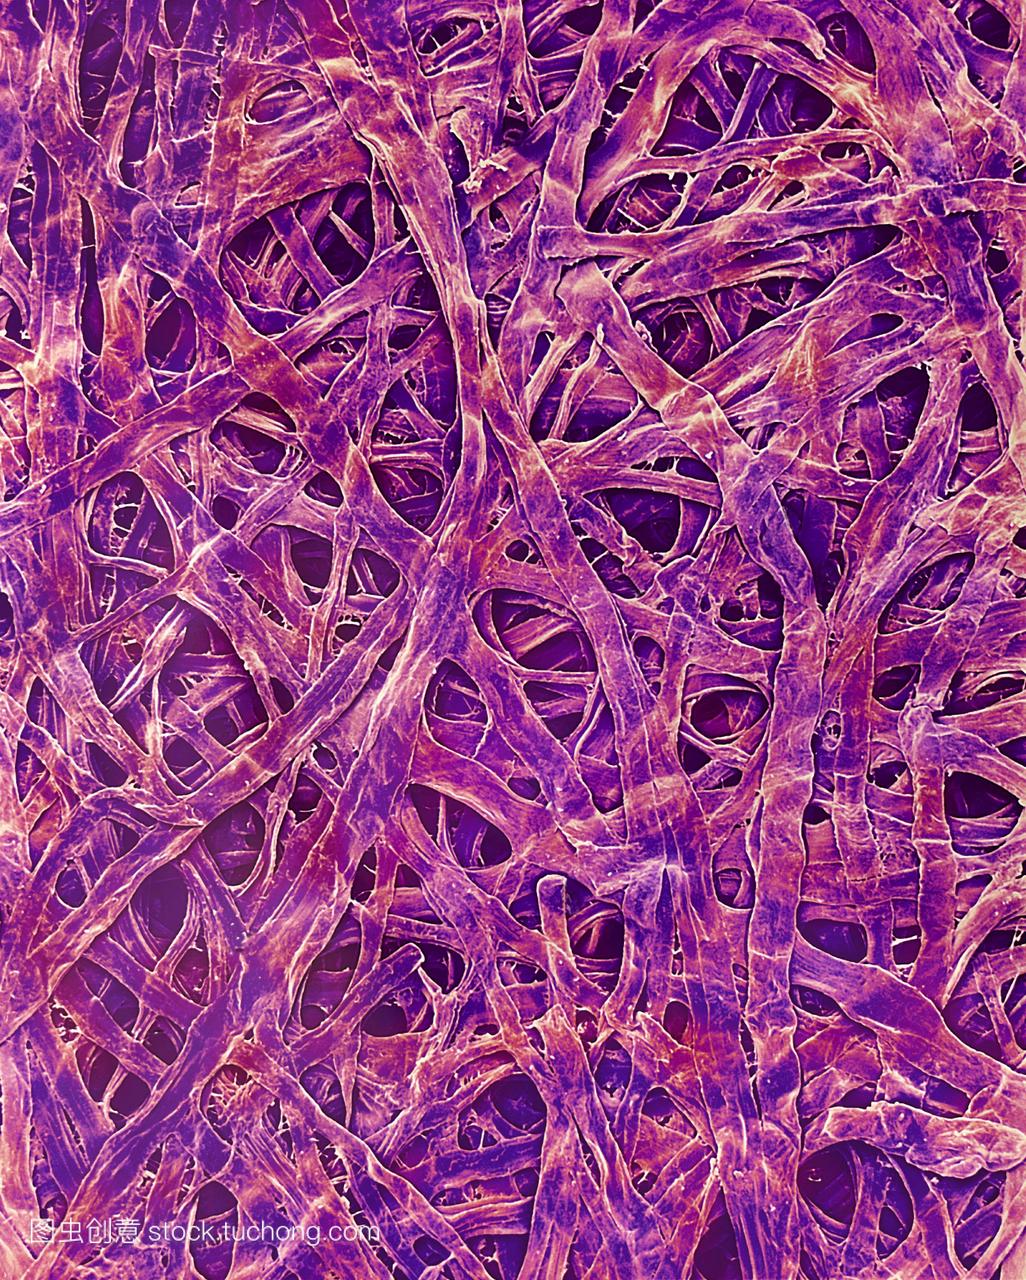 海藻纤维纸彩色扫描电子显微摄影SEM。许多